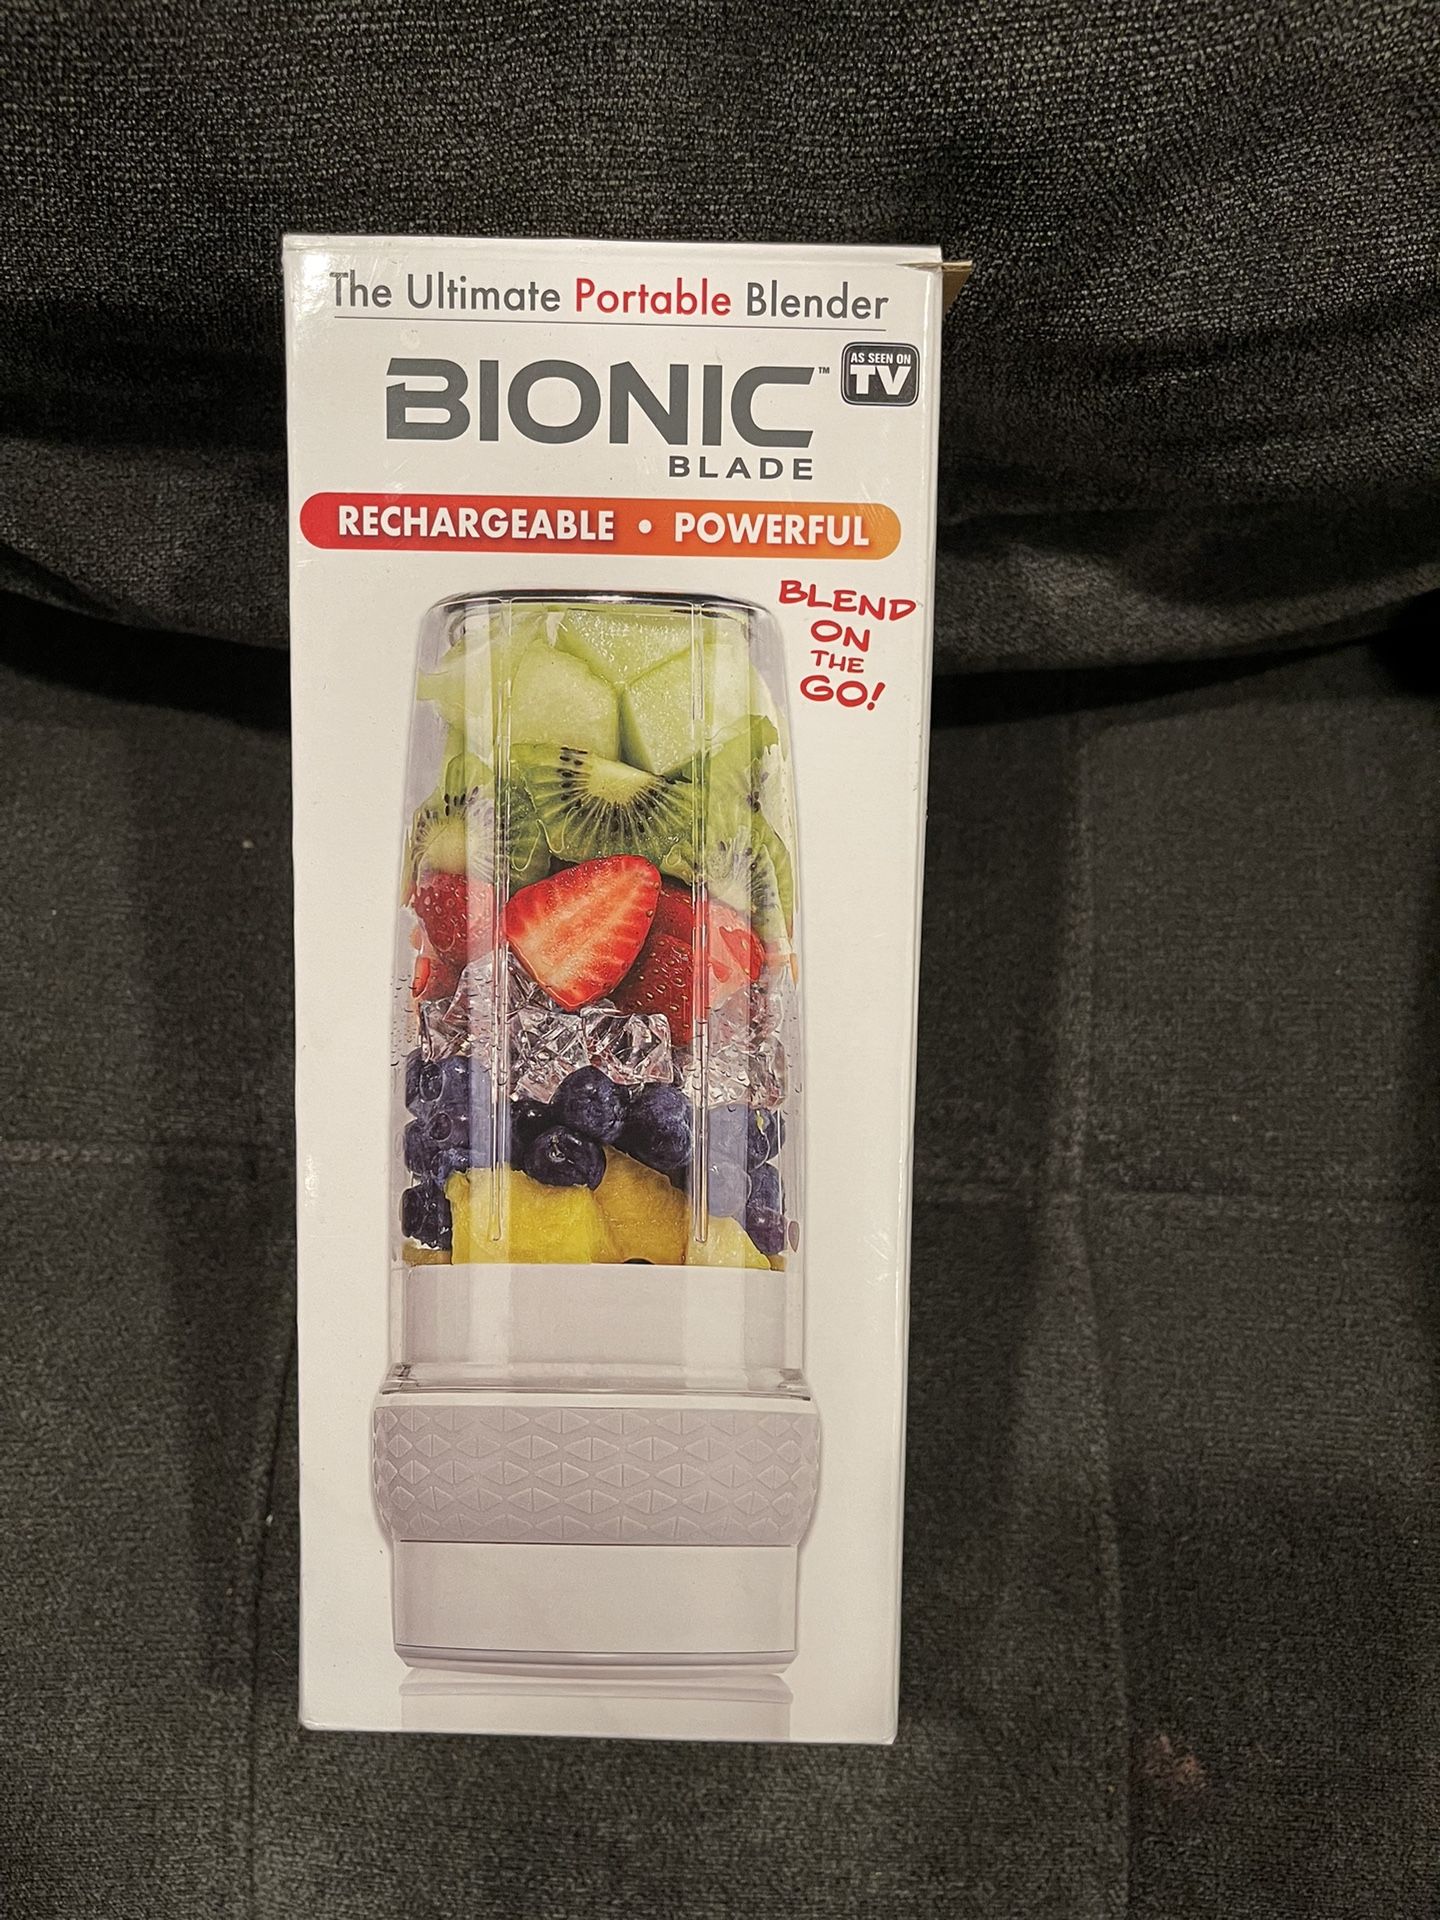 Bionic Blade Personal Blender Portable Blender Powerful Cordless Blender -  NEW